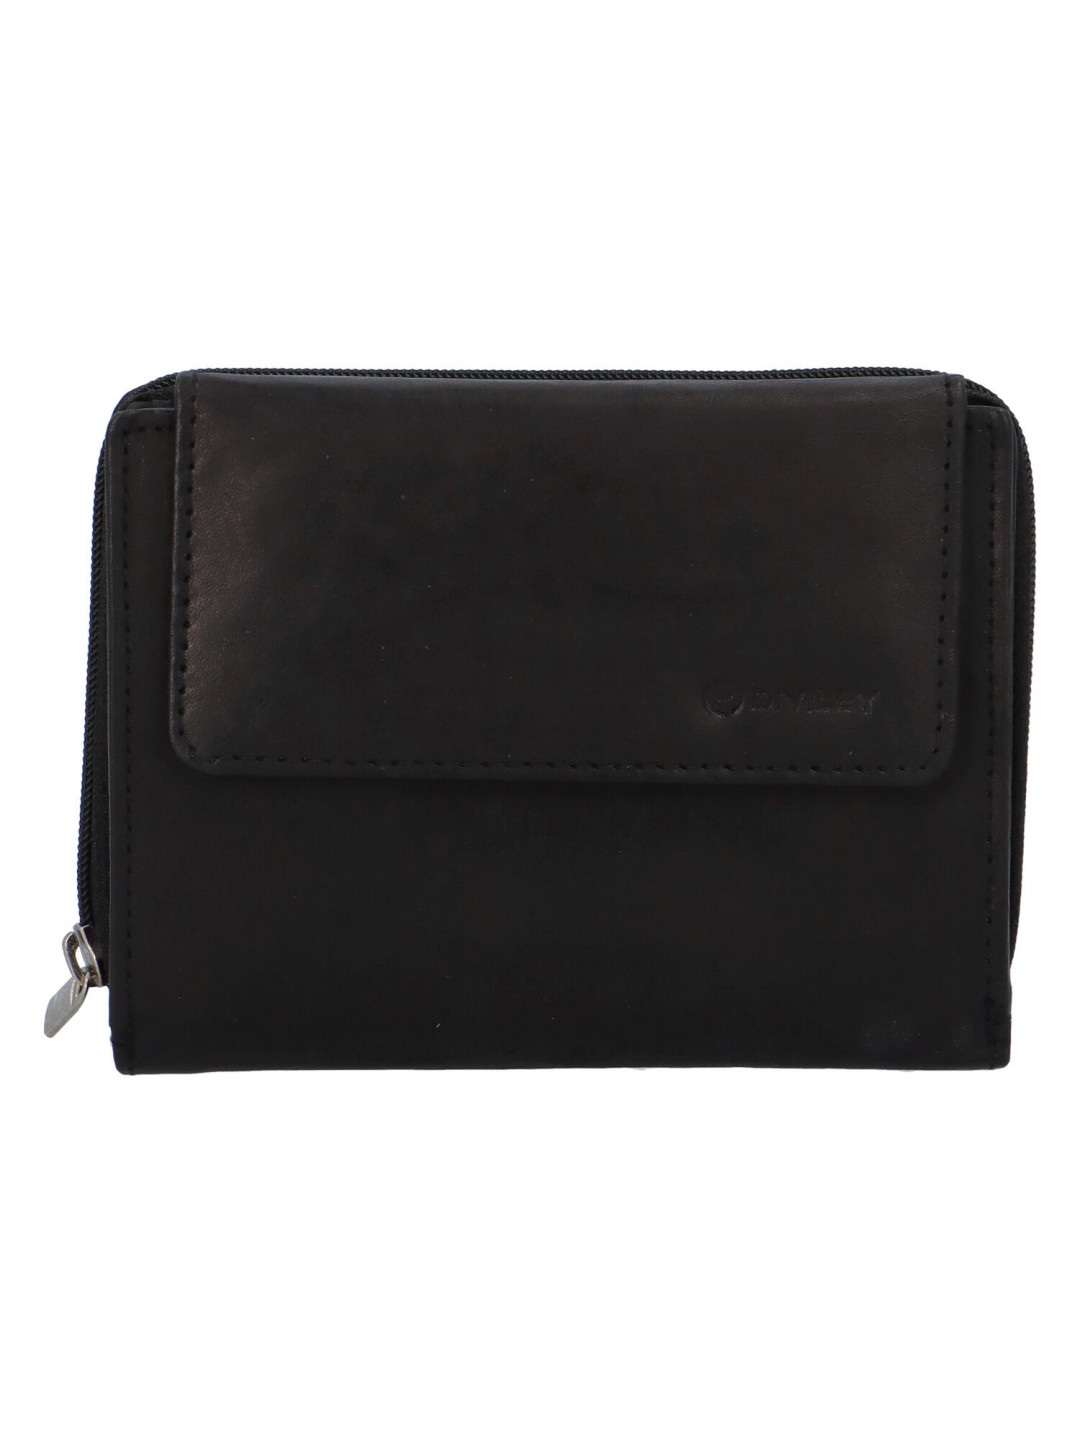 Dámská rozkládací kožená peněženka černá – Diviley M4200